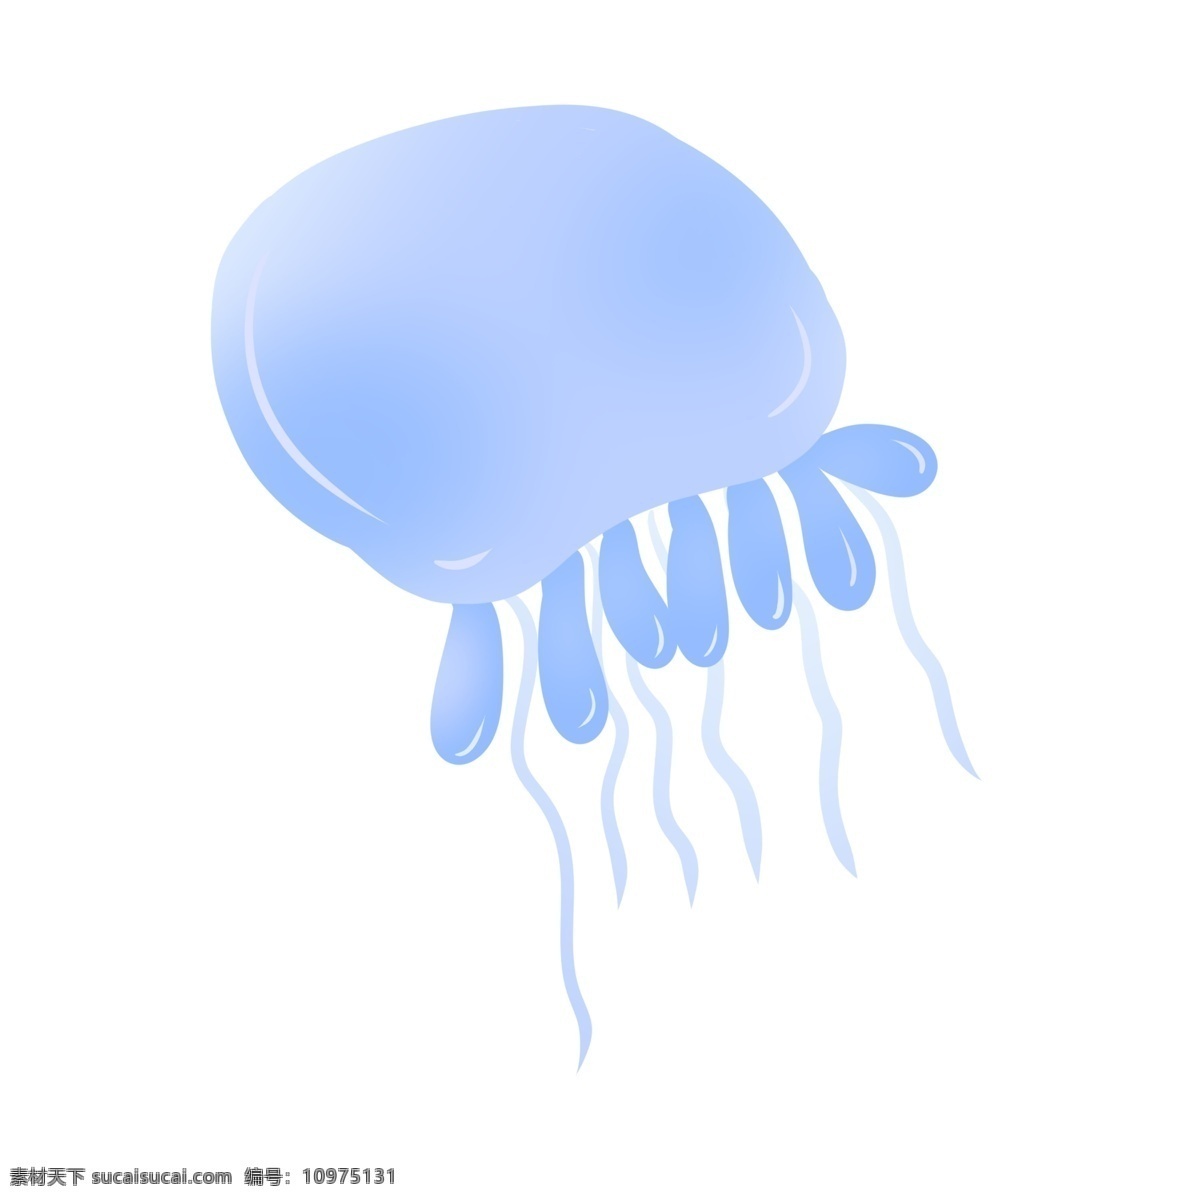 蓝色海洋水母 水母 动物 海洋生物